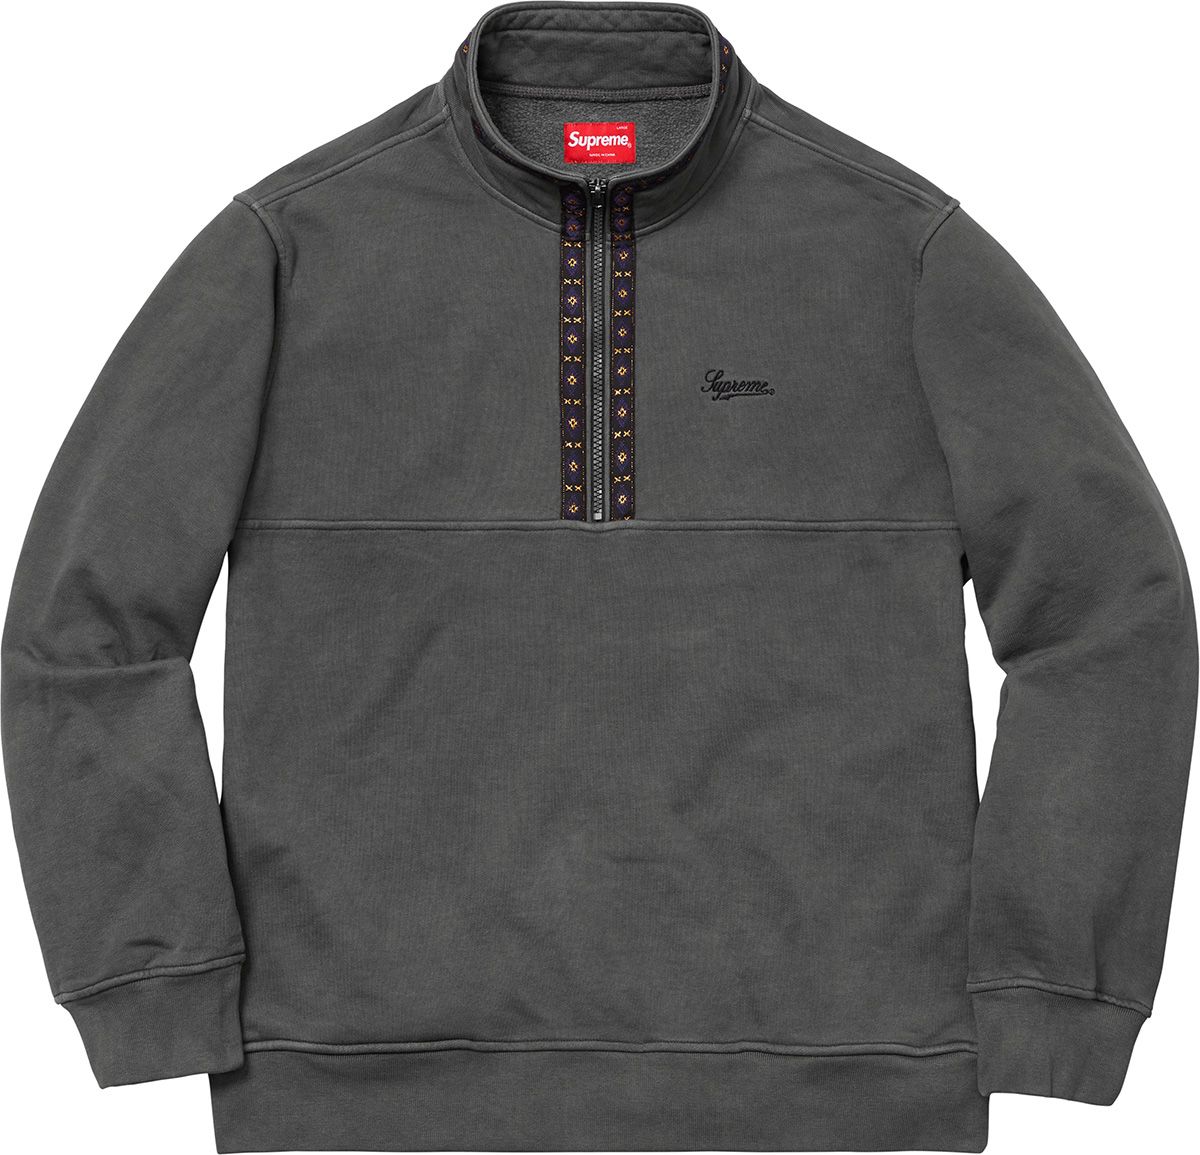 Overdyed Half Zip Sweatshirt - Supreme